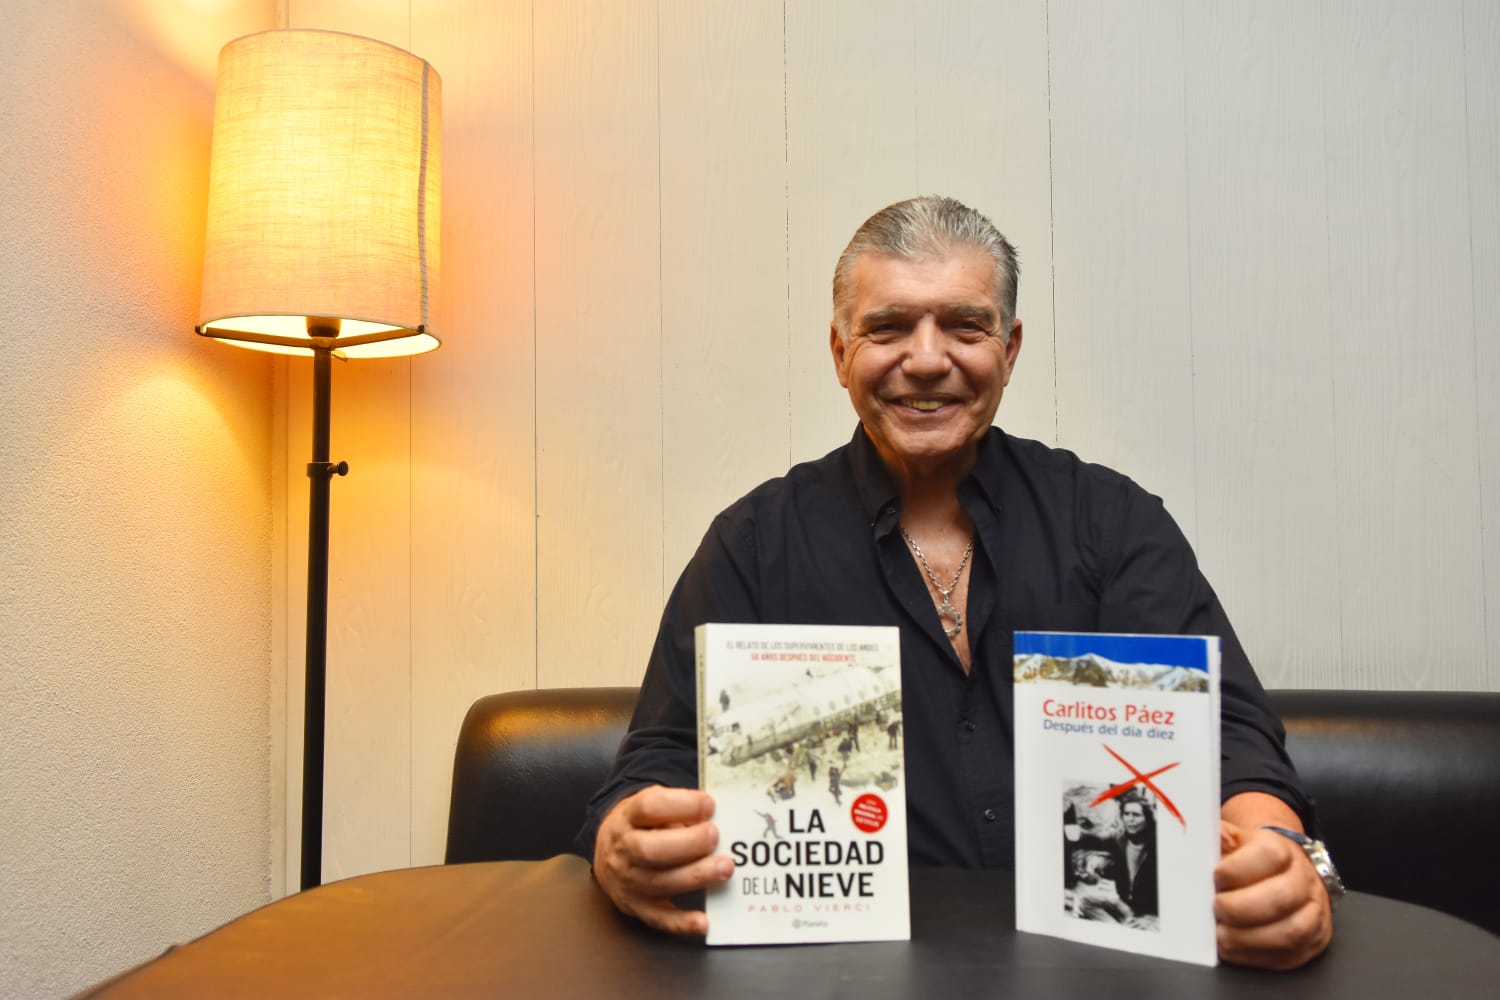 Carlitos Páez de la Sociedad de la Nieve confirmó su presentación en Costa Rica